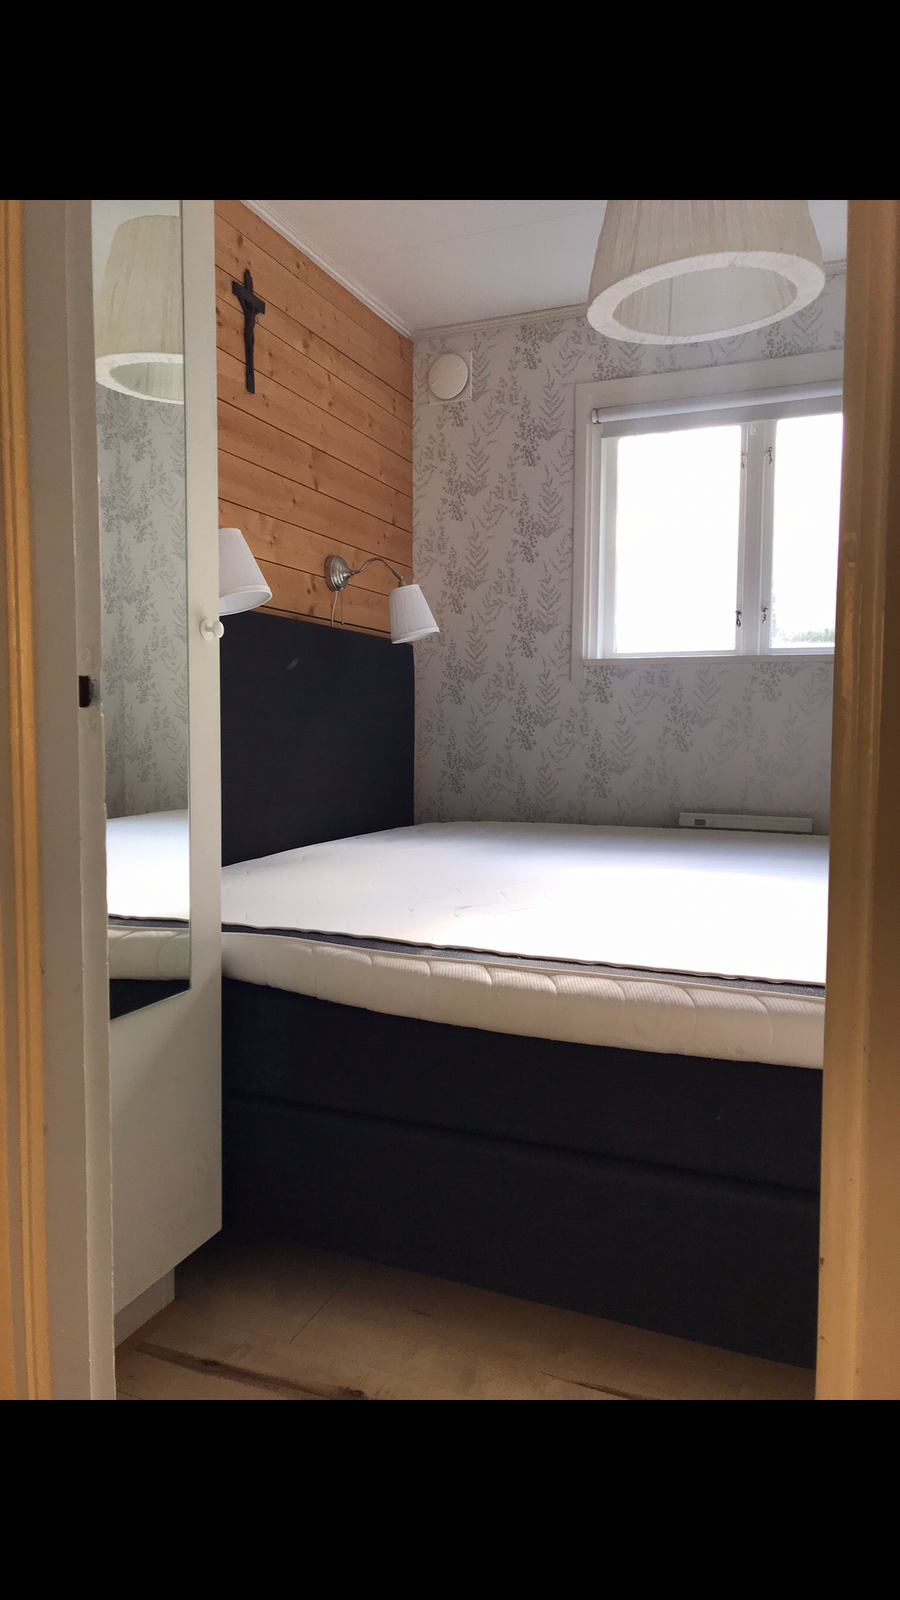 Luksussommerhus, Sverige, 4 sovepladser